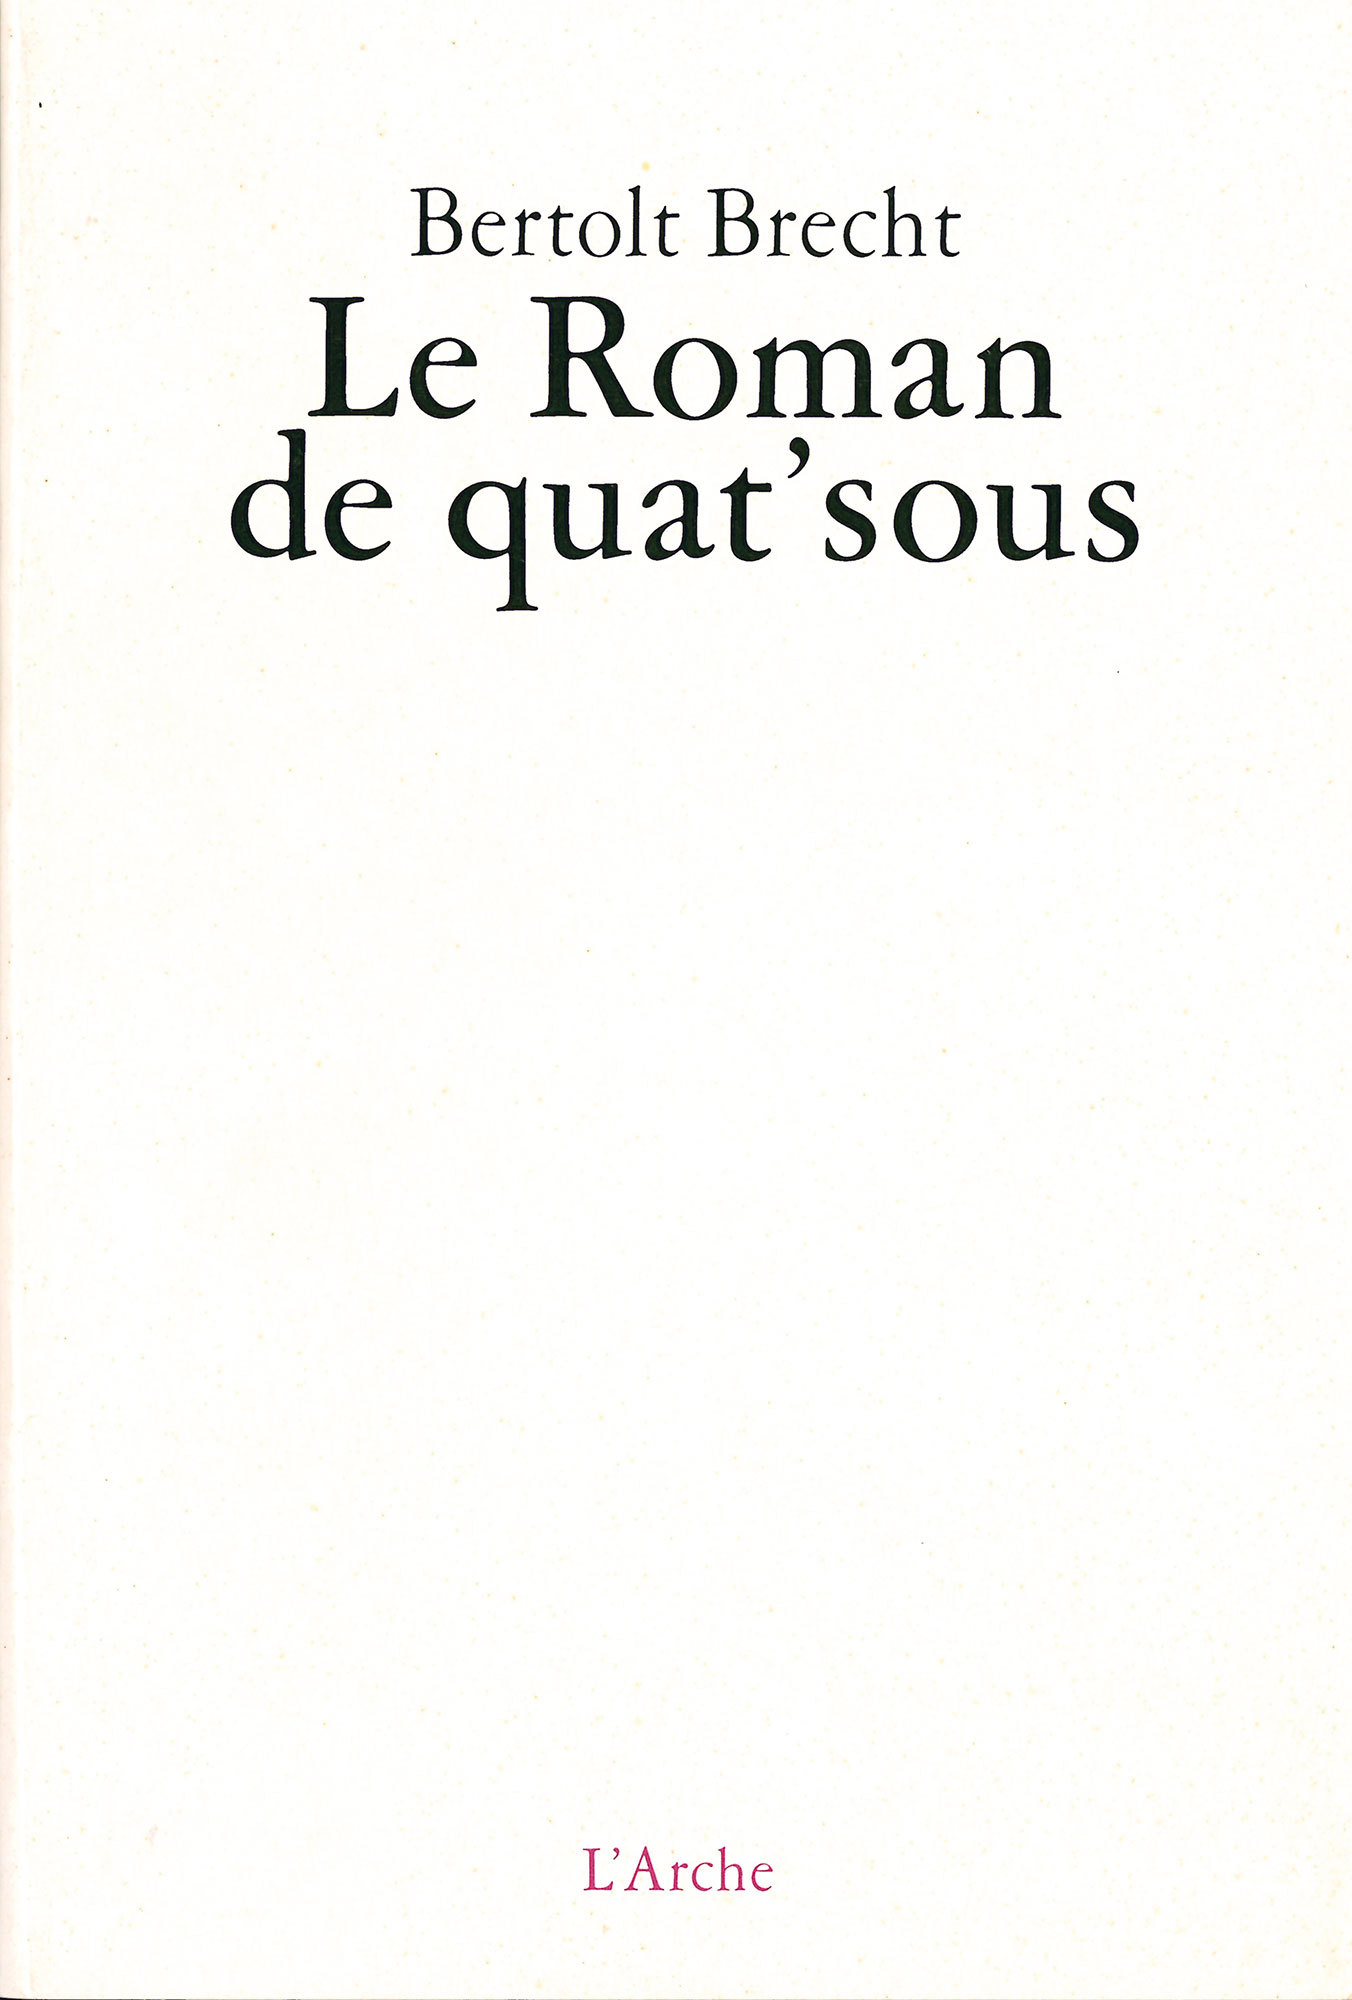 Le Roman de quat'sous (9782851813671-front-cover)